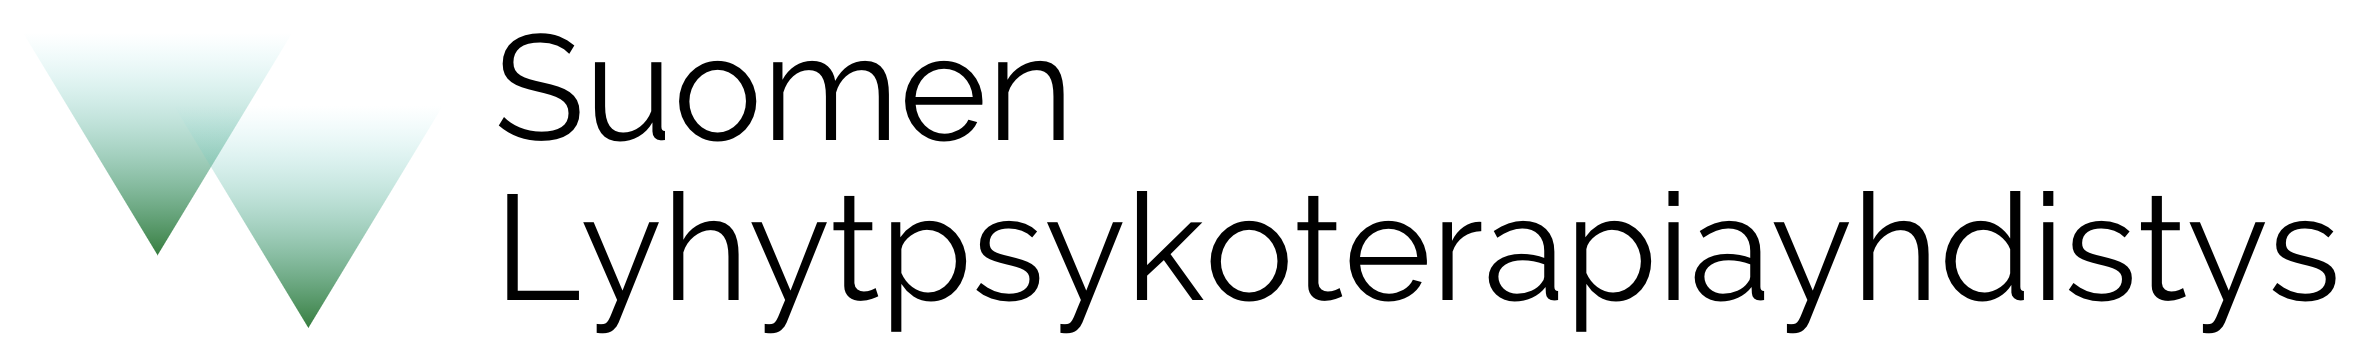 Suomen Lyhytpsykoterapiayhdistys r.y.